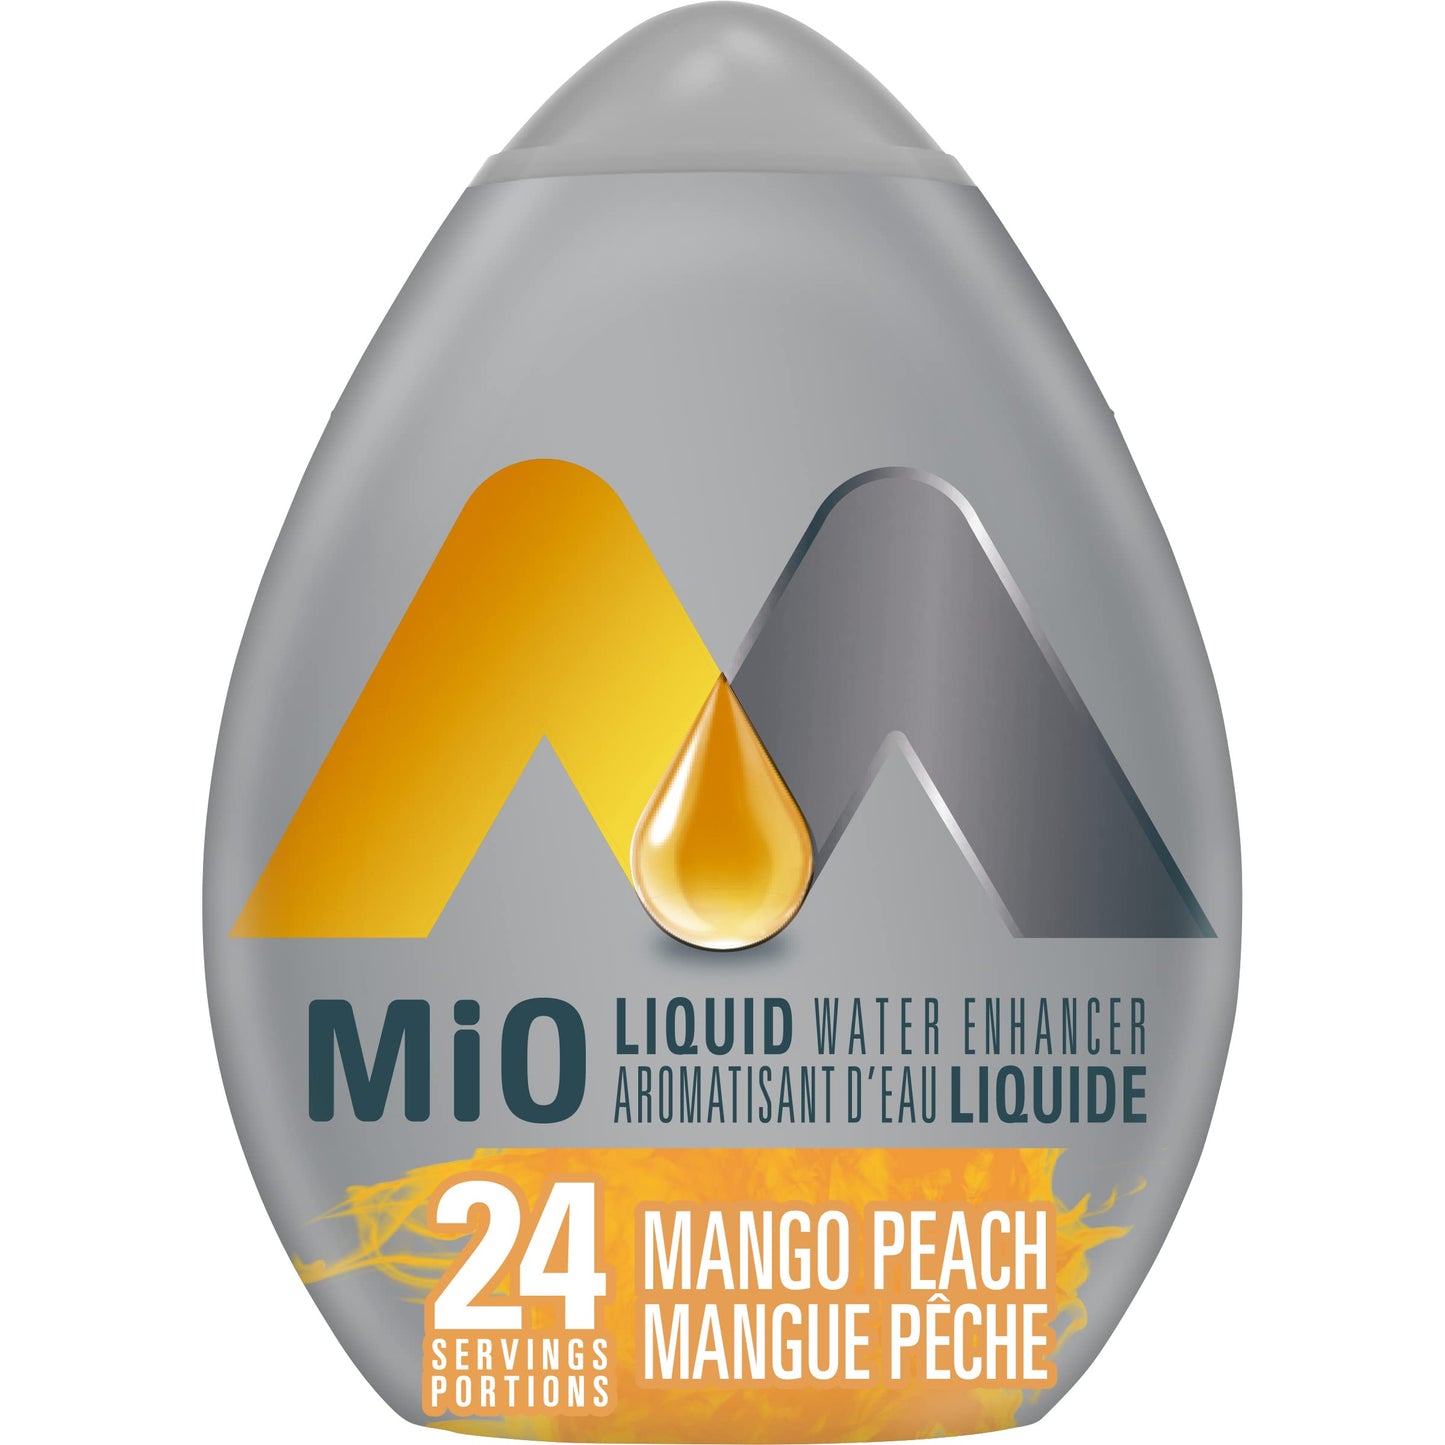 MiO Mango Peach Liquid Water Enhancer, 48mL/1.6oz (Shipped from Canada)